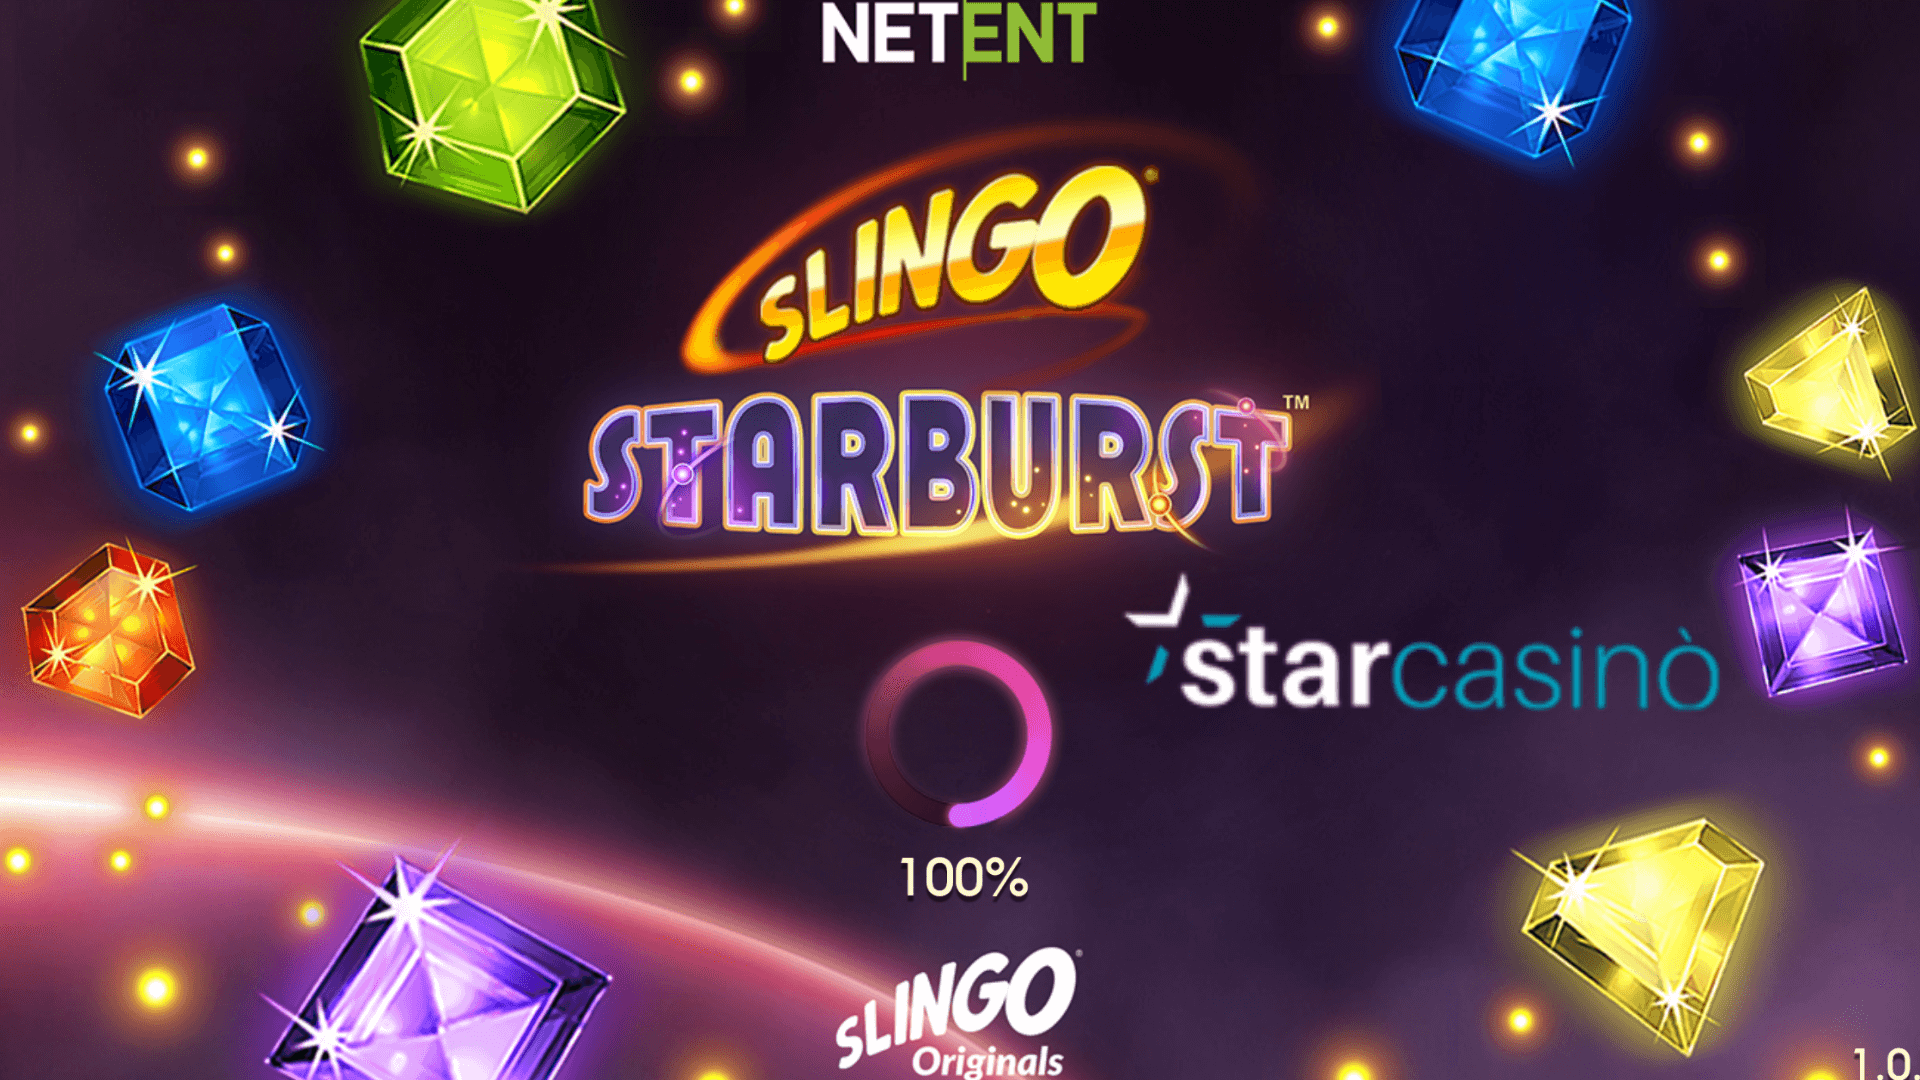 Sebagian besar slot bingo melakukan… Slingo!  16 judul Gaming Realms di StarCasino: Book of Slingo, Slingo Starbust, dan Slingo Sweet Bonanza di antara entri baru